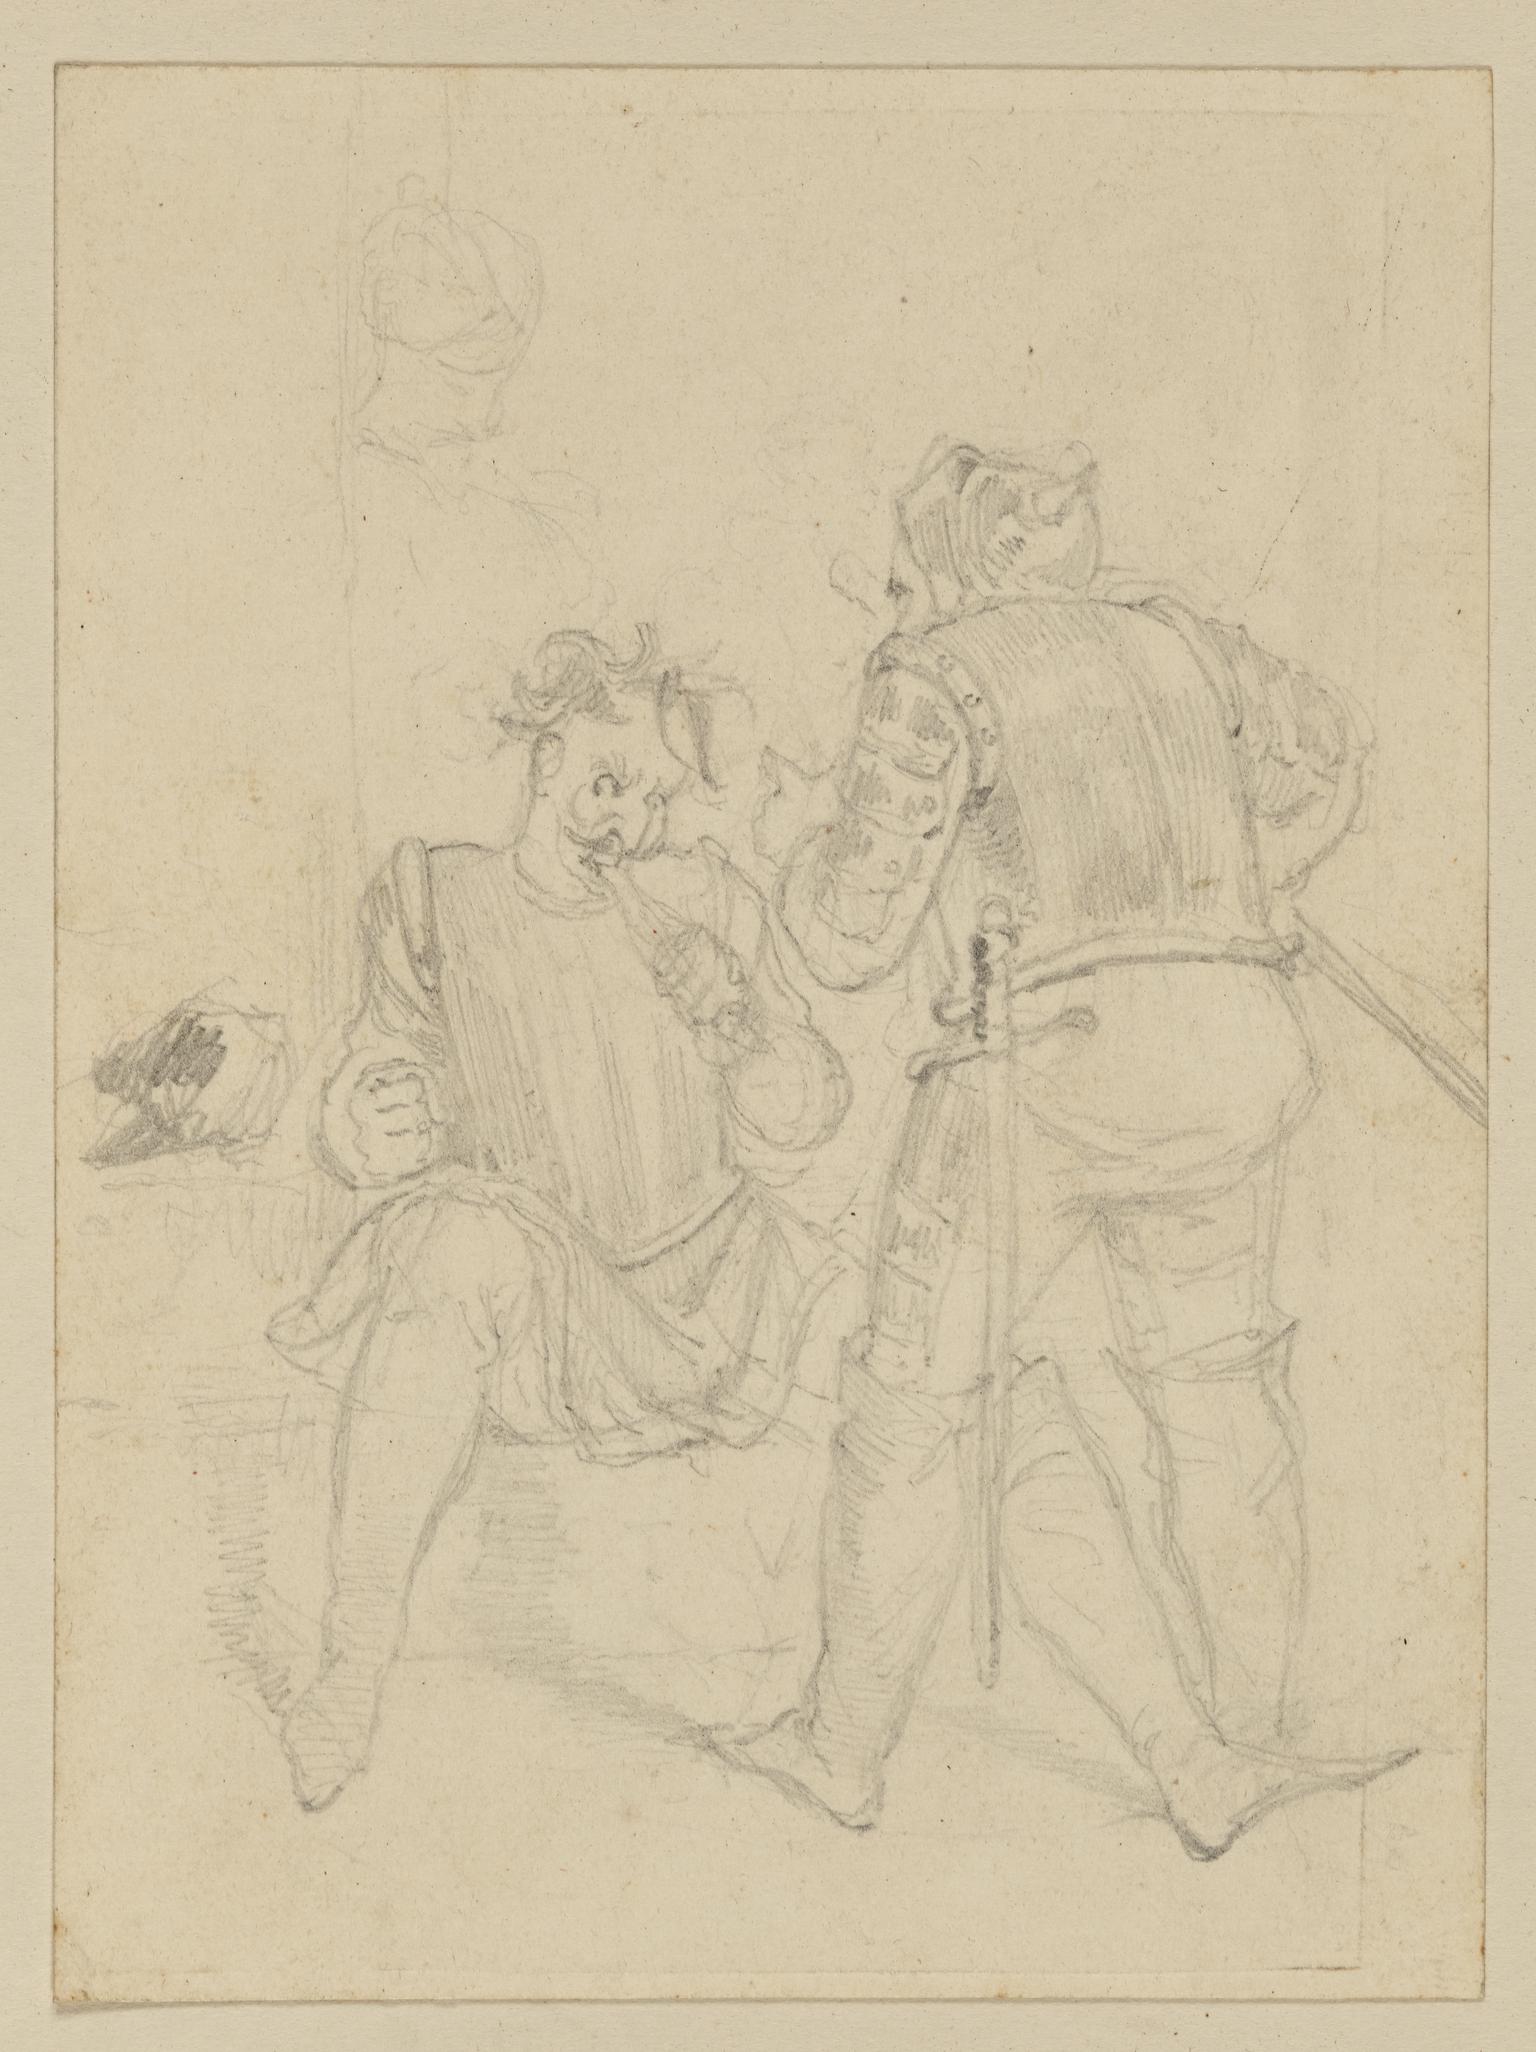 Fluellen forcing Pistol to eat the leek (Henry V)